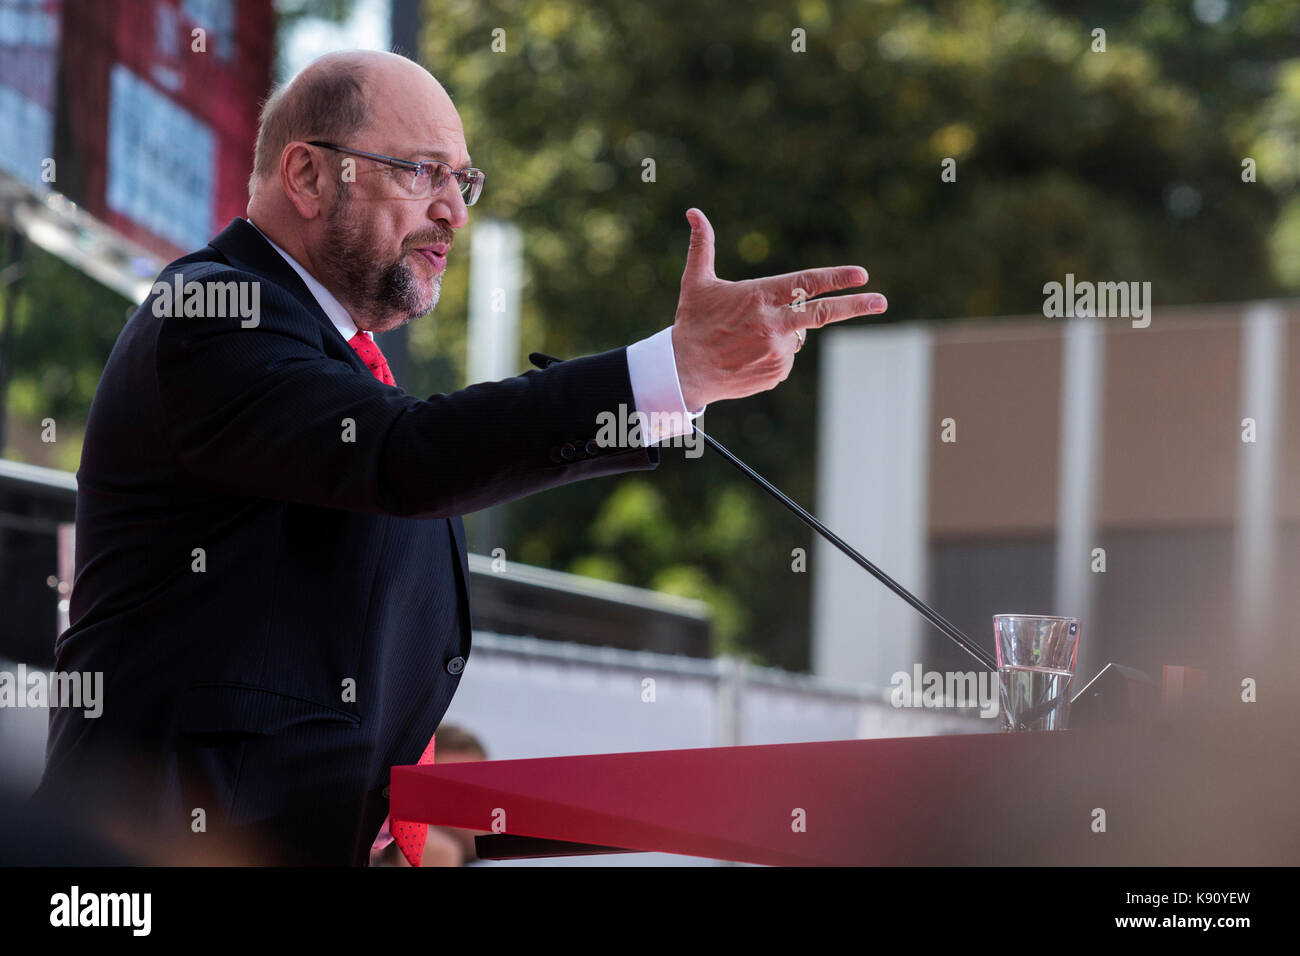 Gelsenkirchen (Germania). Il 20 settembre 2017. leader della SPD (socialdemocratici) e in corsa per diventare il prossimo chanceller della Germania nel Bundestag elezioni questa domenica, Martin Schulz assiste un rally a Gelsenkirchen, zona della Ruhr, Germania. Foto Stock